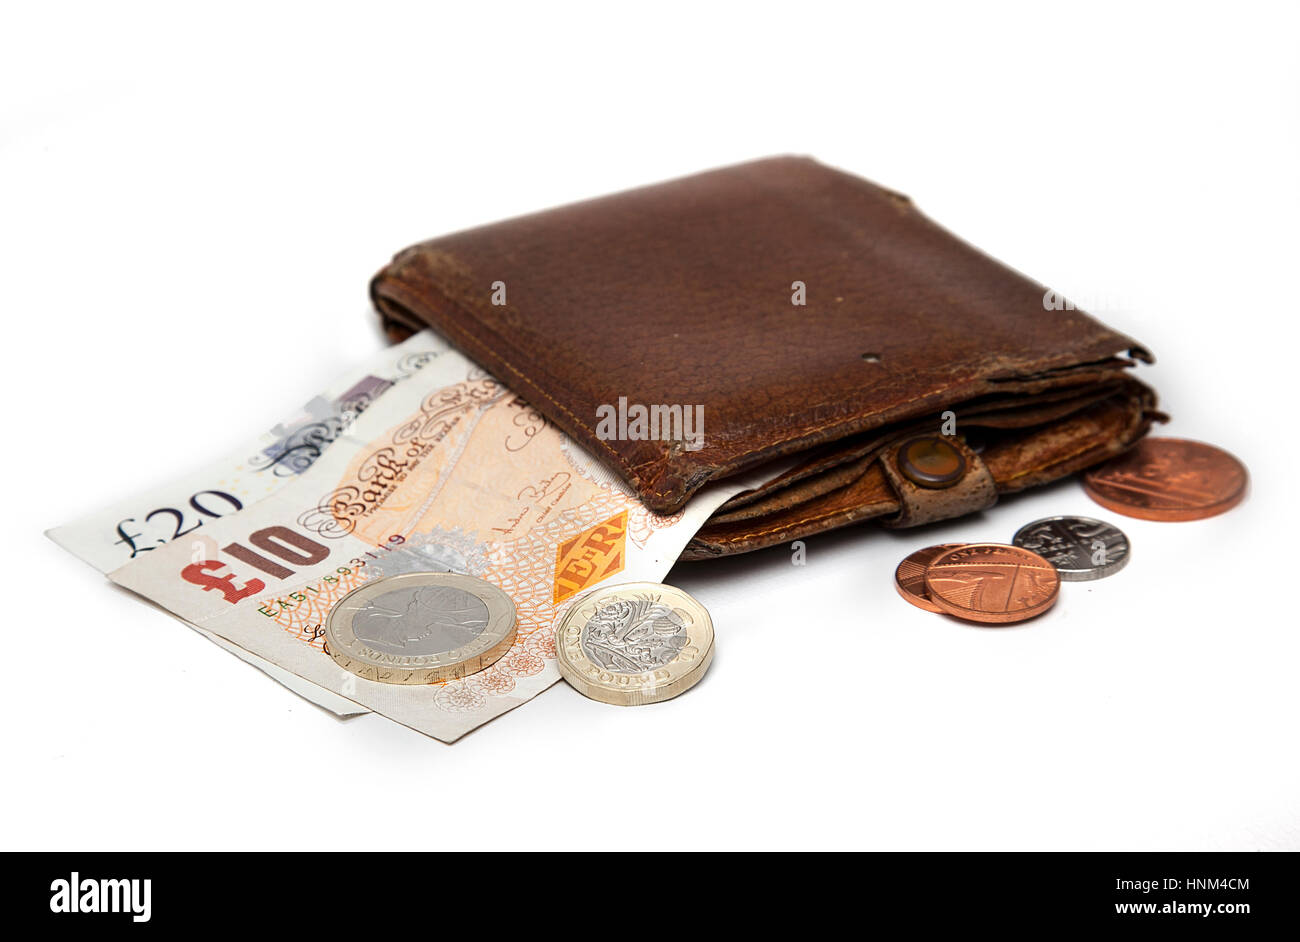 Brieftasche mit britischen Geld, Banknoten und Münzen Stockfoto